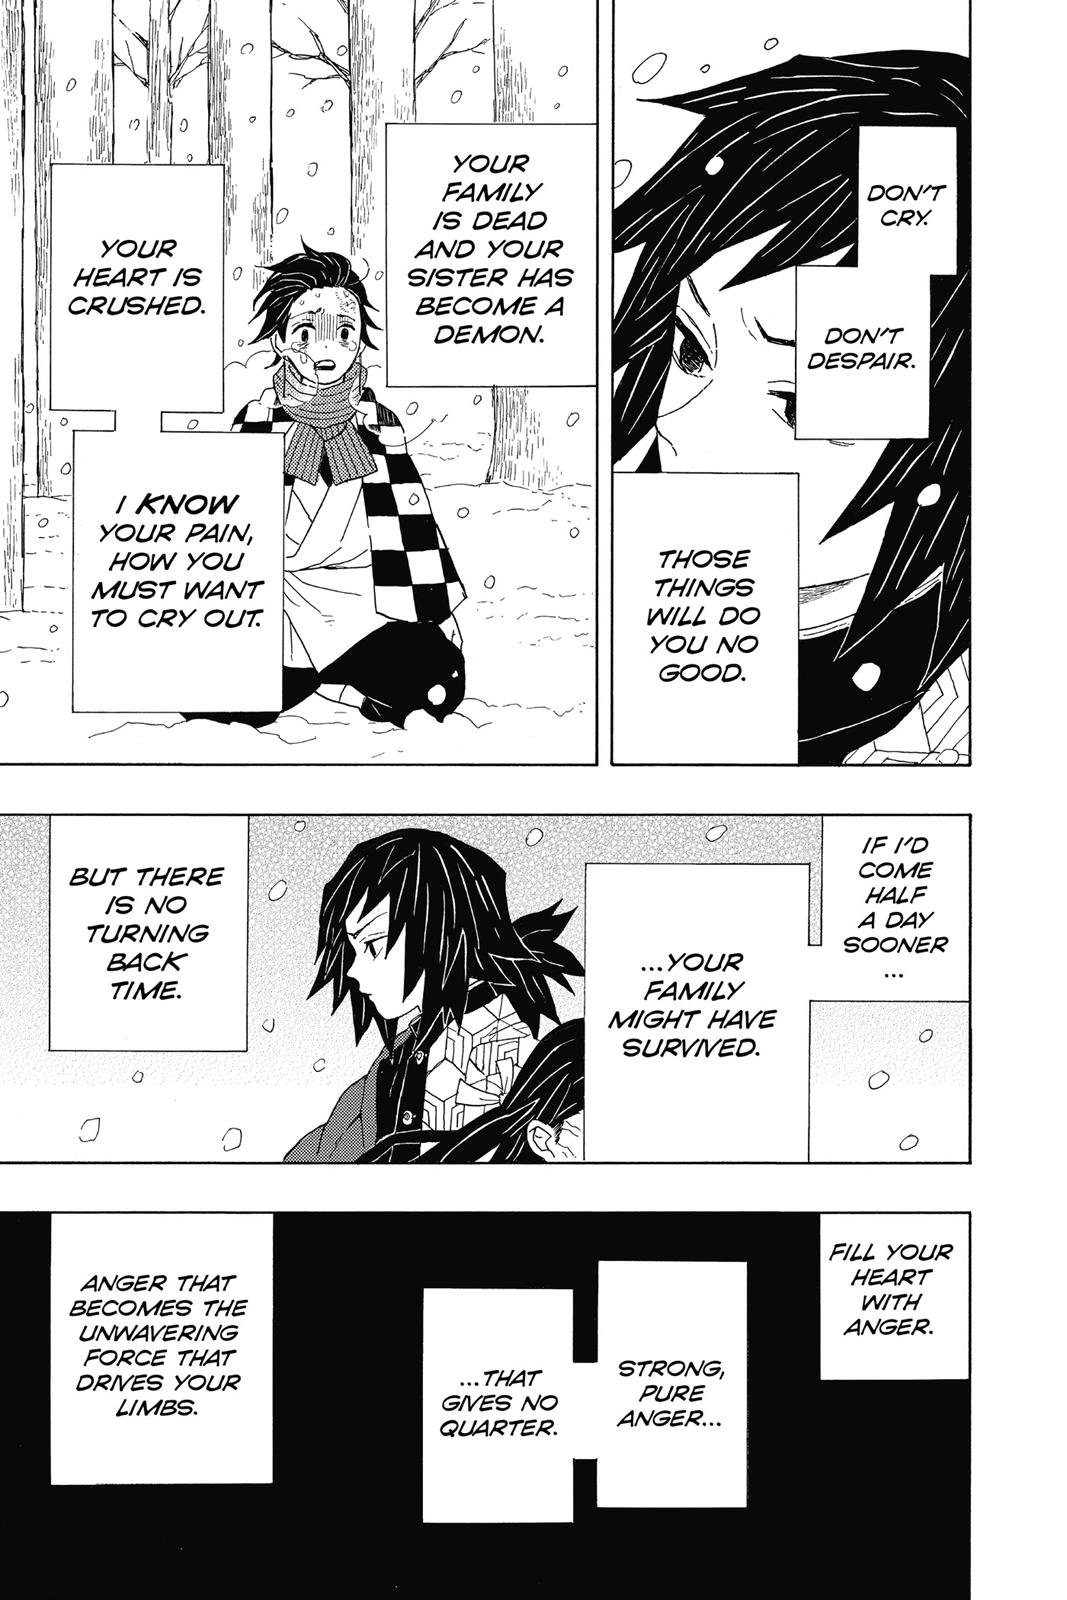 Demon Slayer Manga Manga Chapter - 1 - image 22